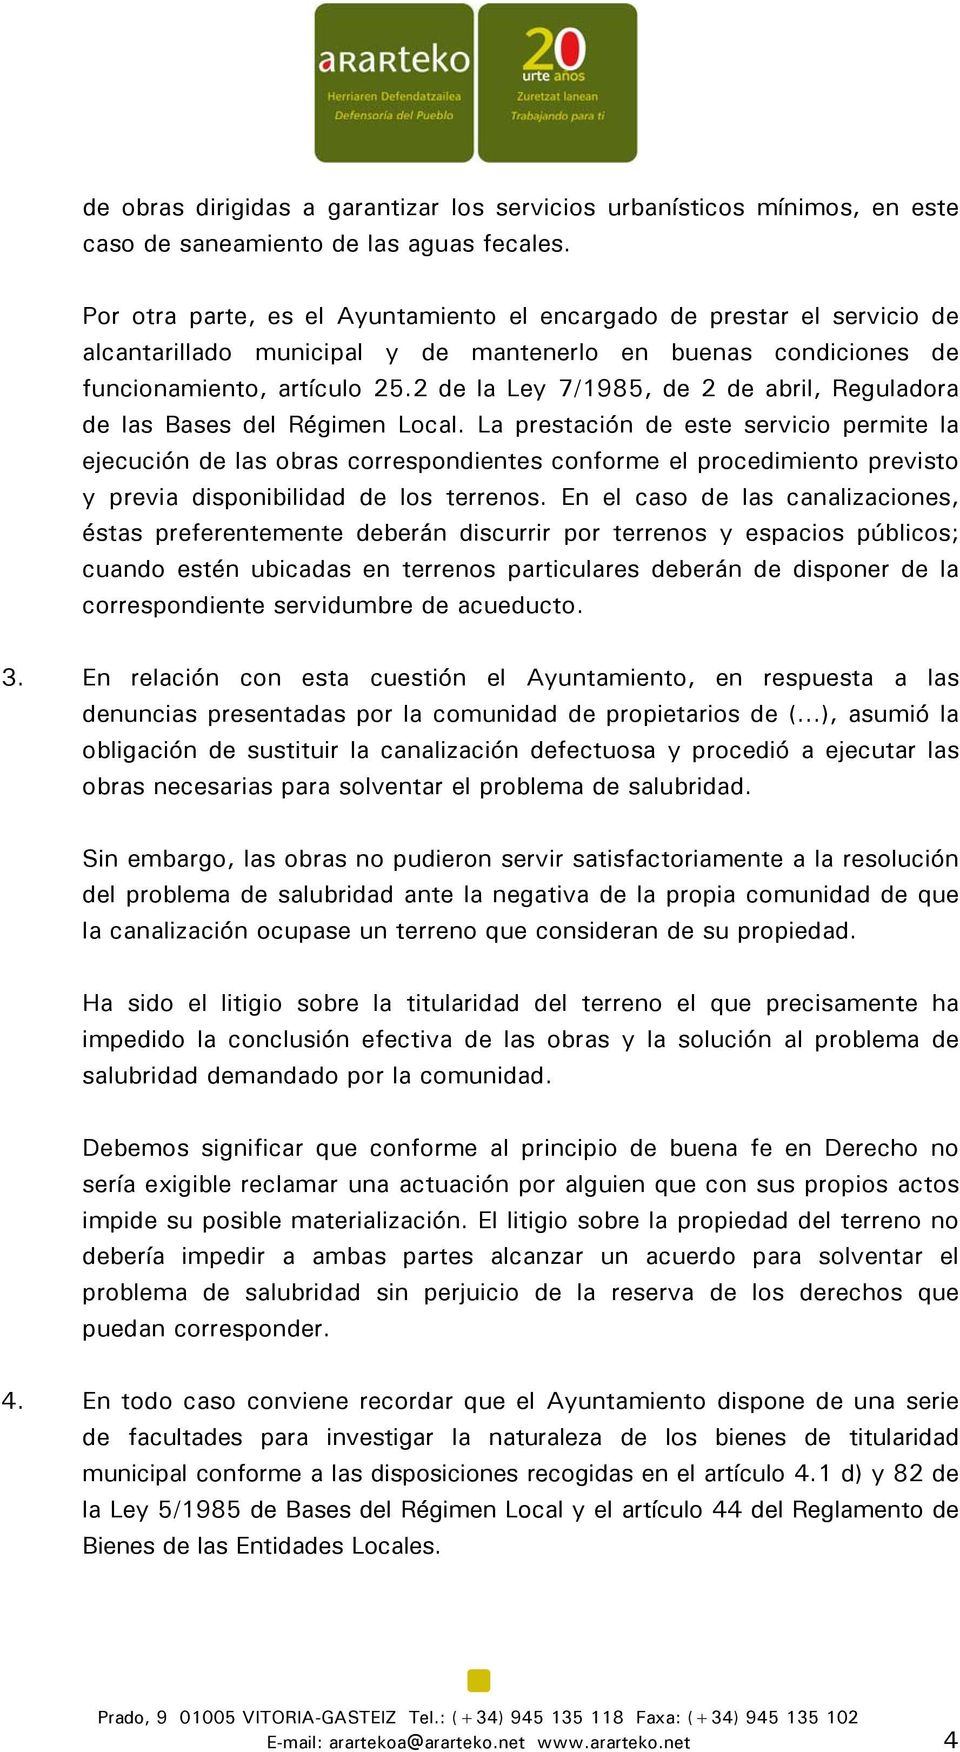 2 de la Ley 7/1985, de 2 de abril, Reguladora de las Bases del Régimen Local.